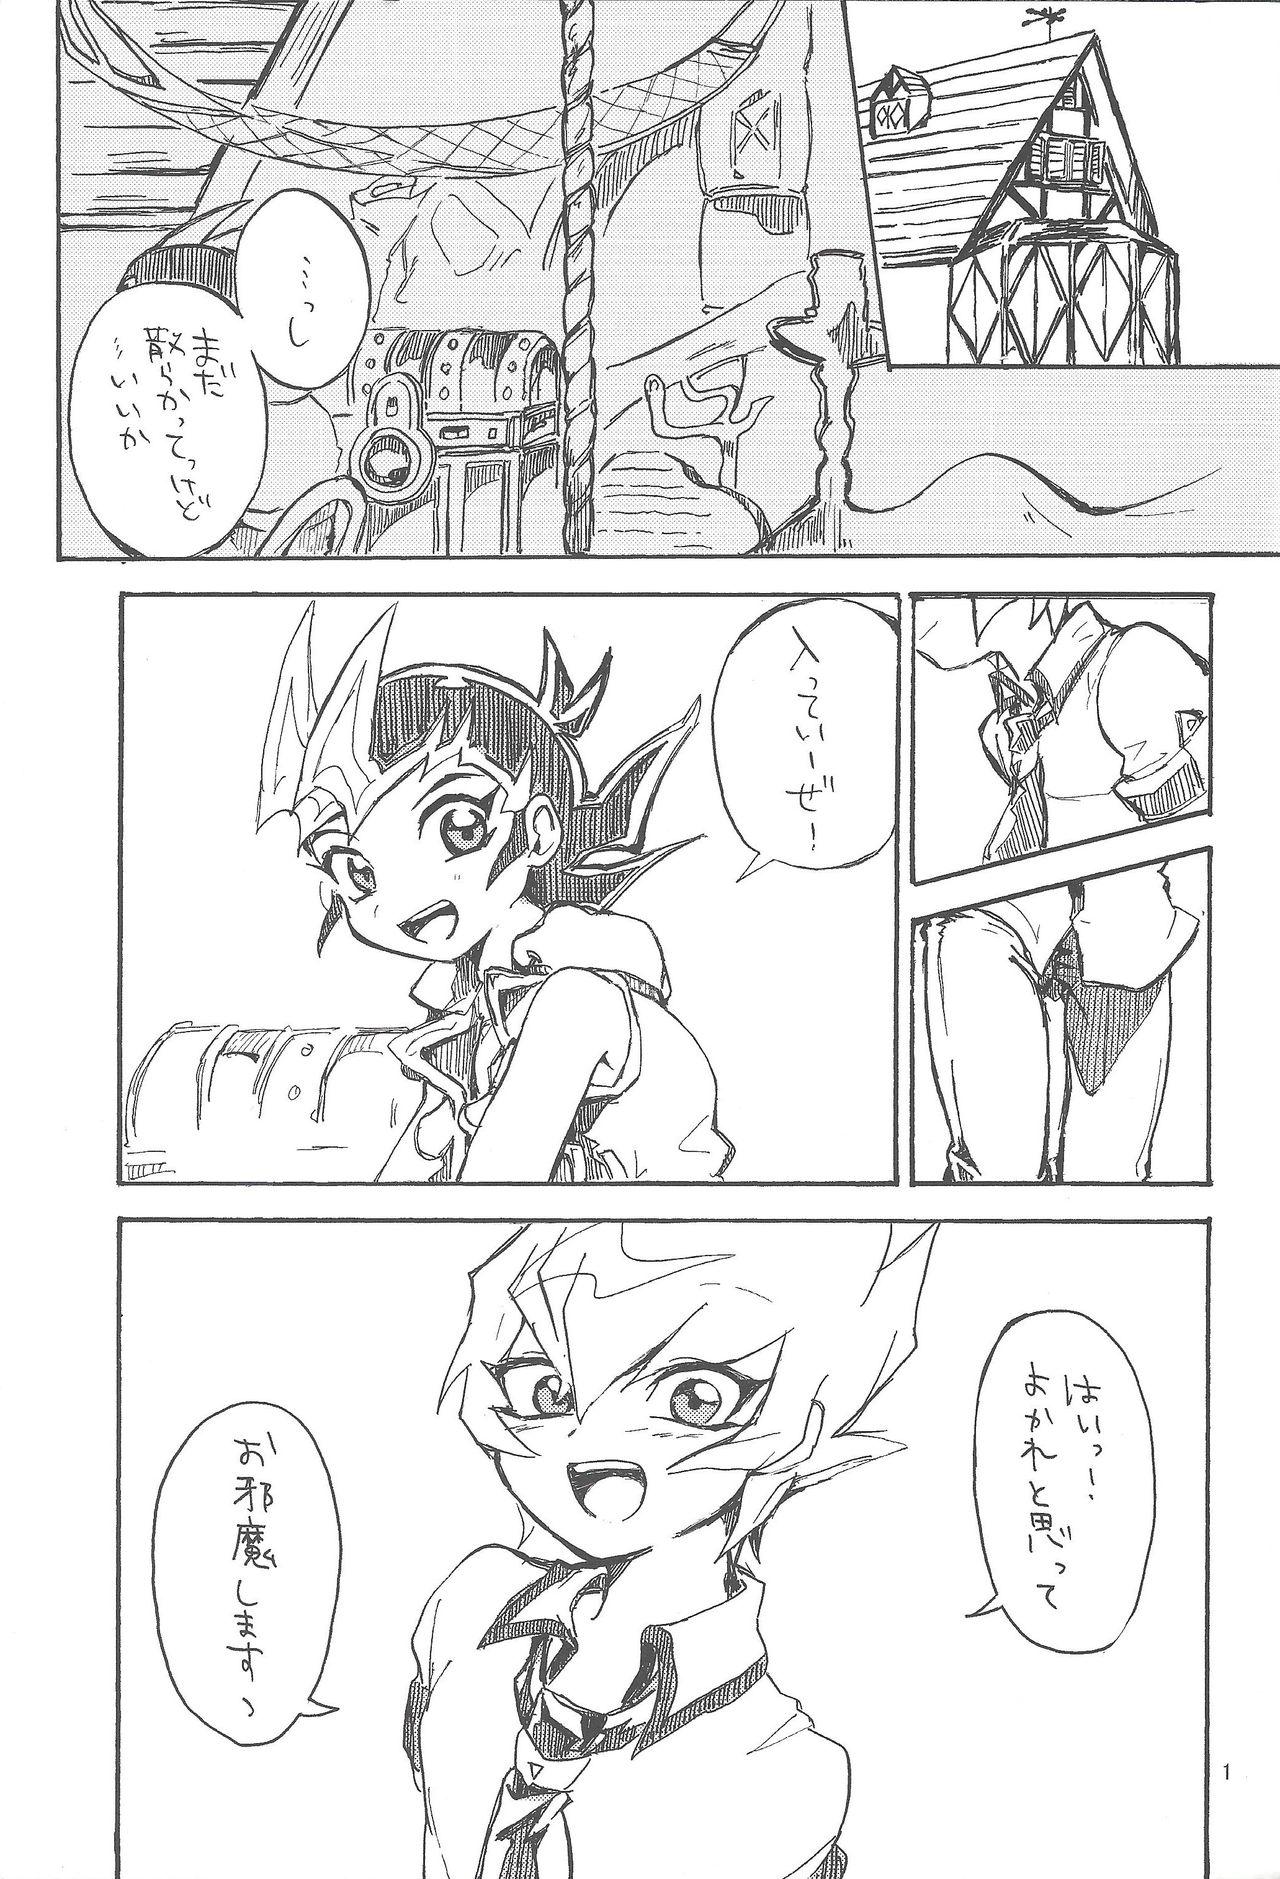 Threesome Mihitsu ni koi. - Yu-gi-oh zexal Ex Gf - Page 2